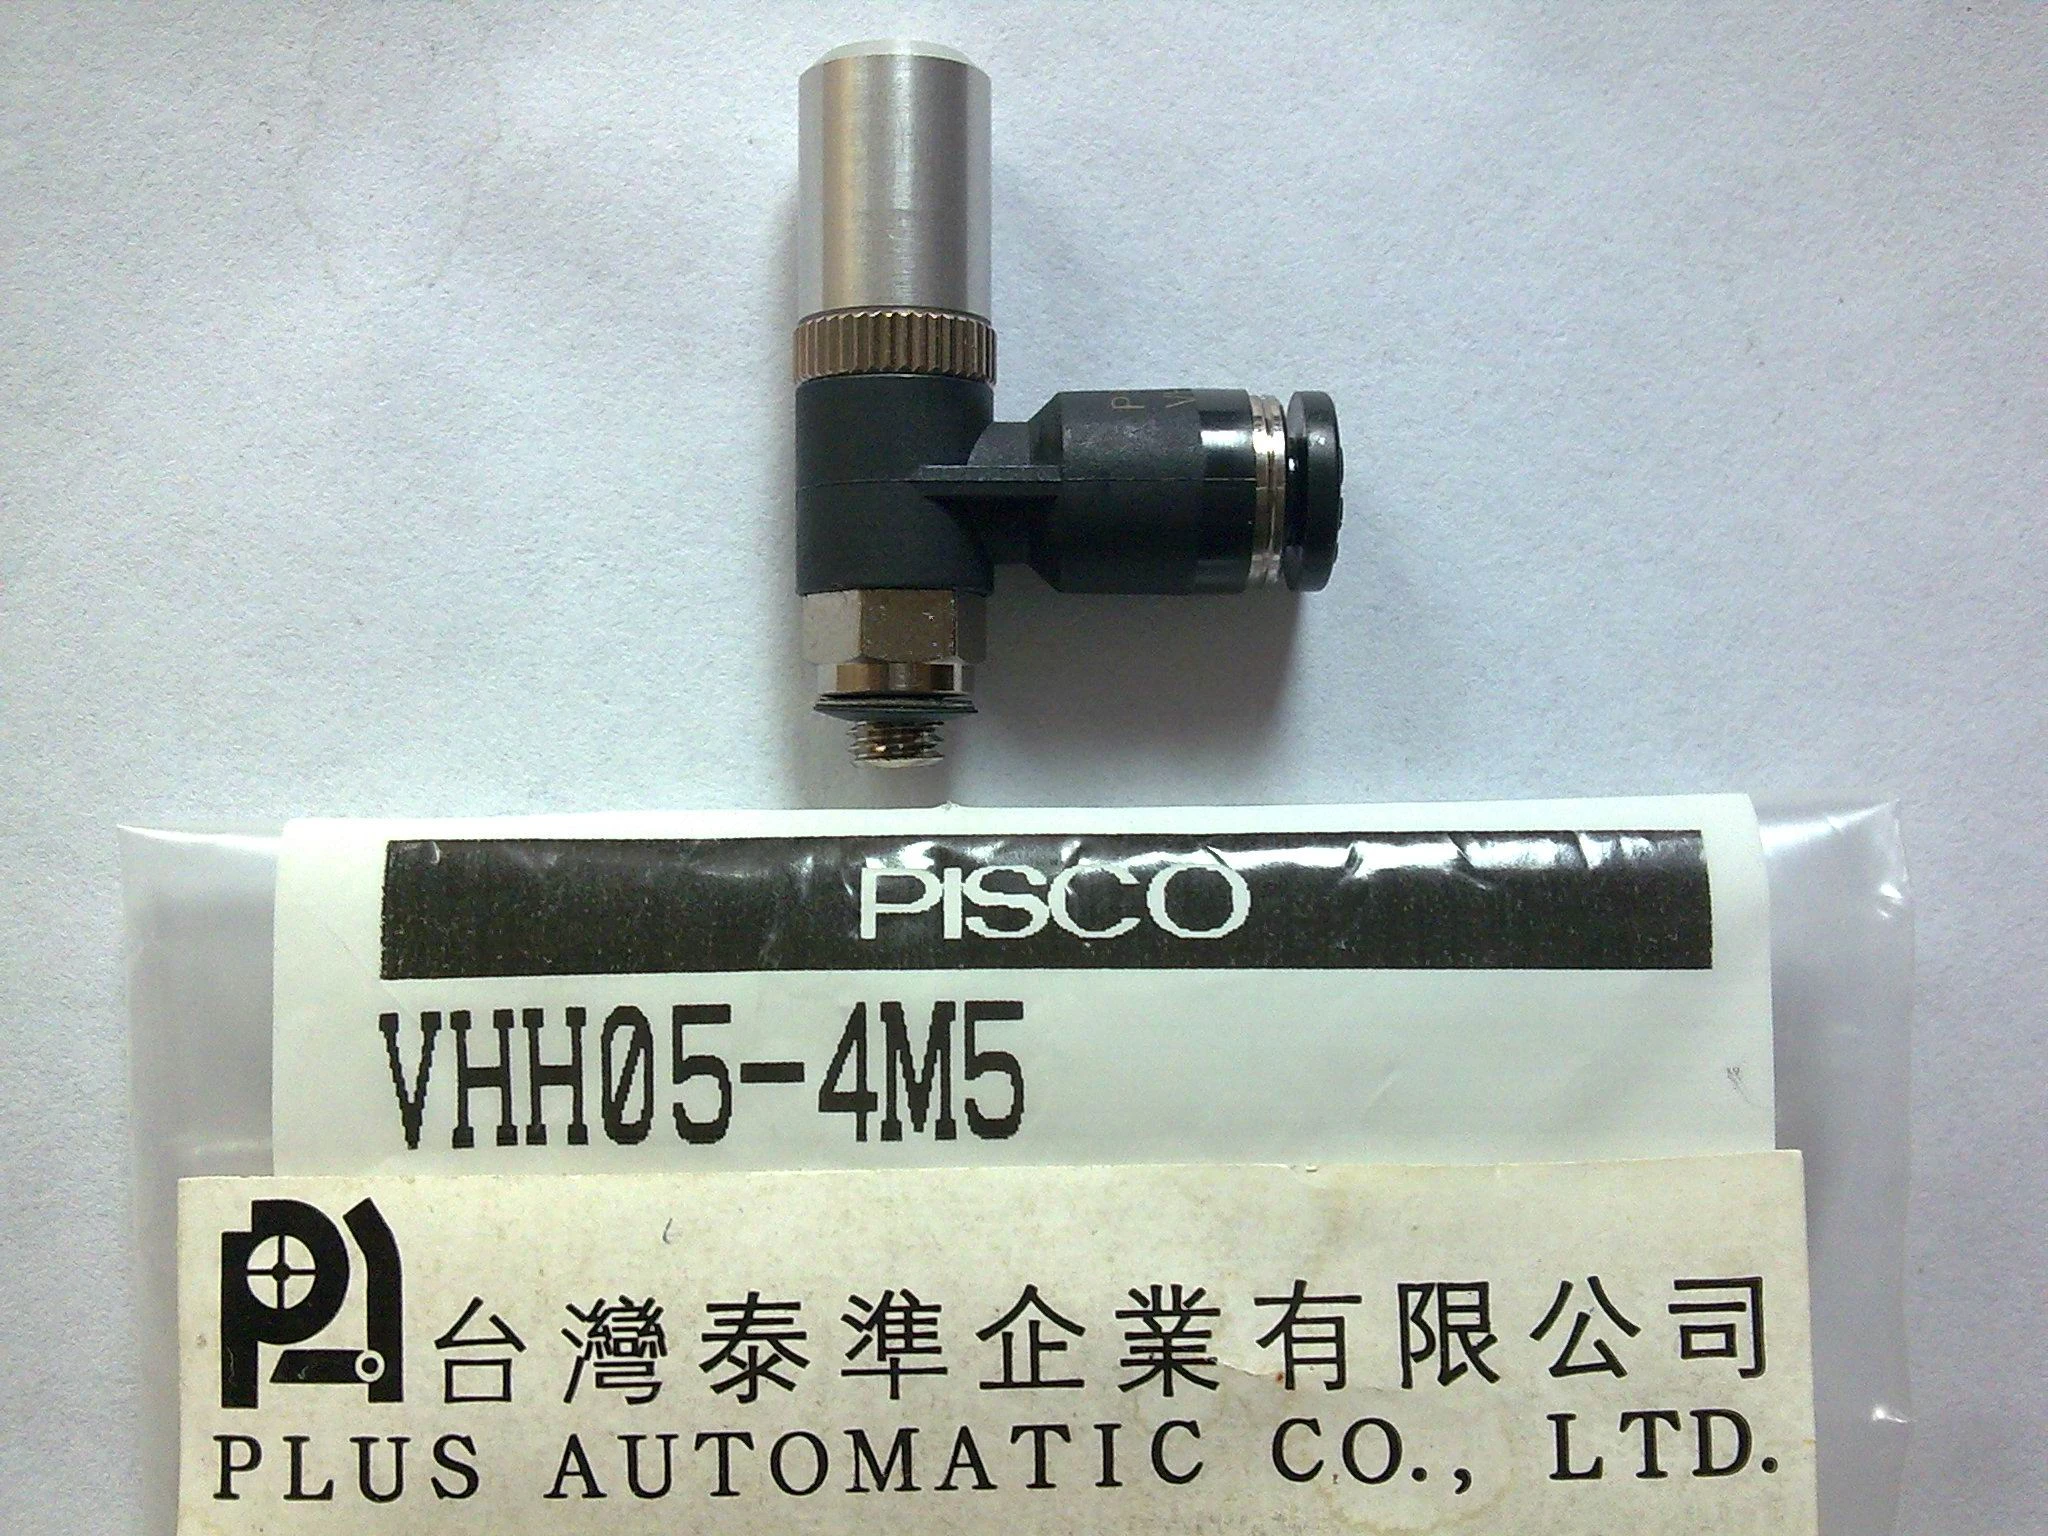 日本真空產生器 (VHH05-4M5 PISCO)